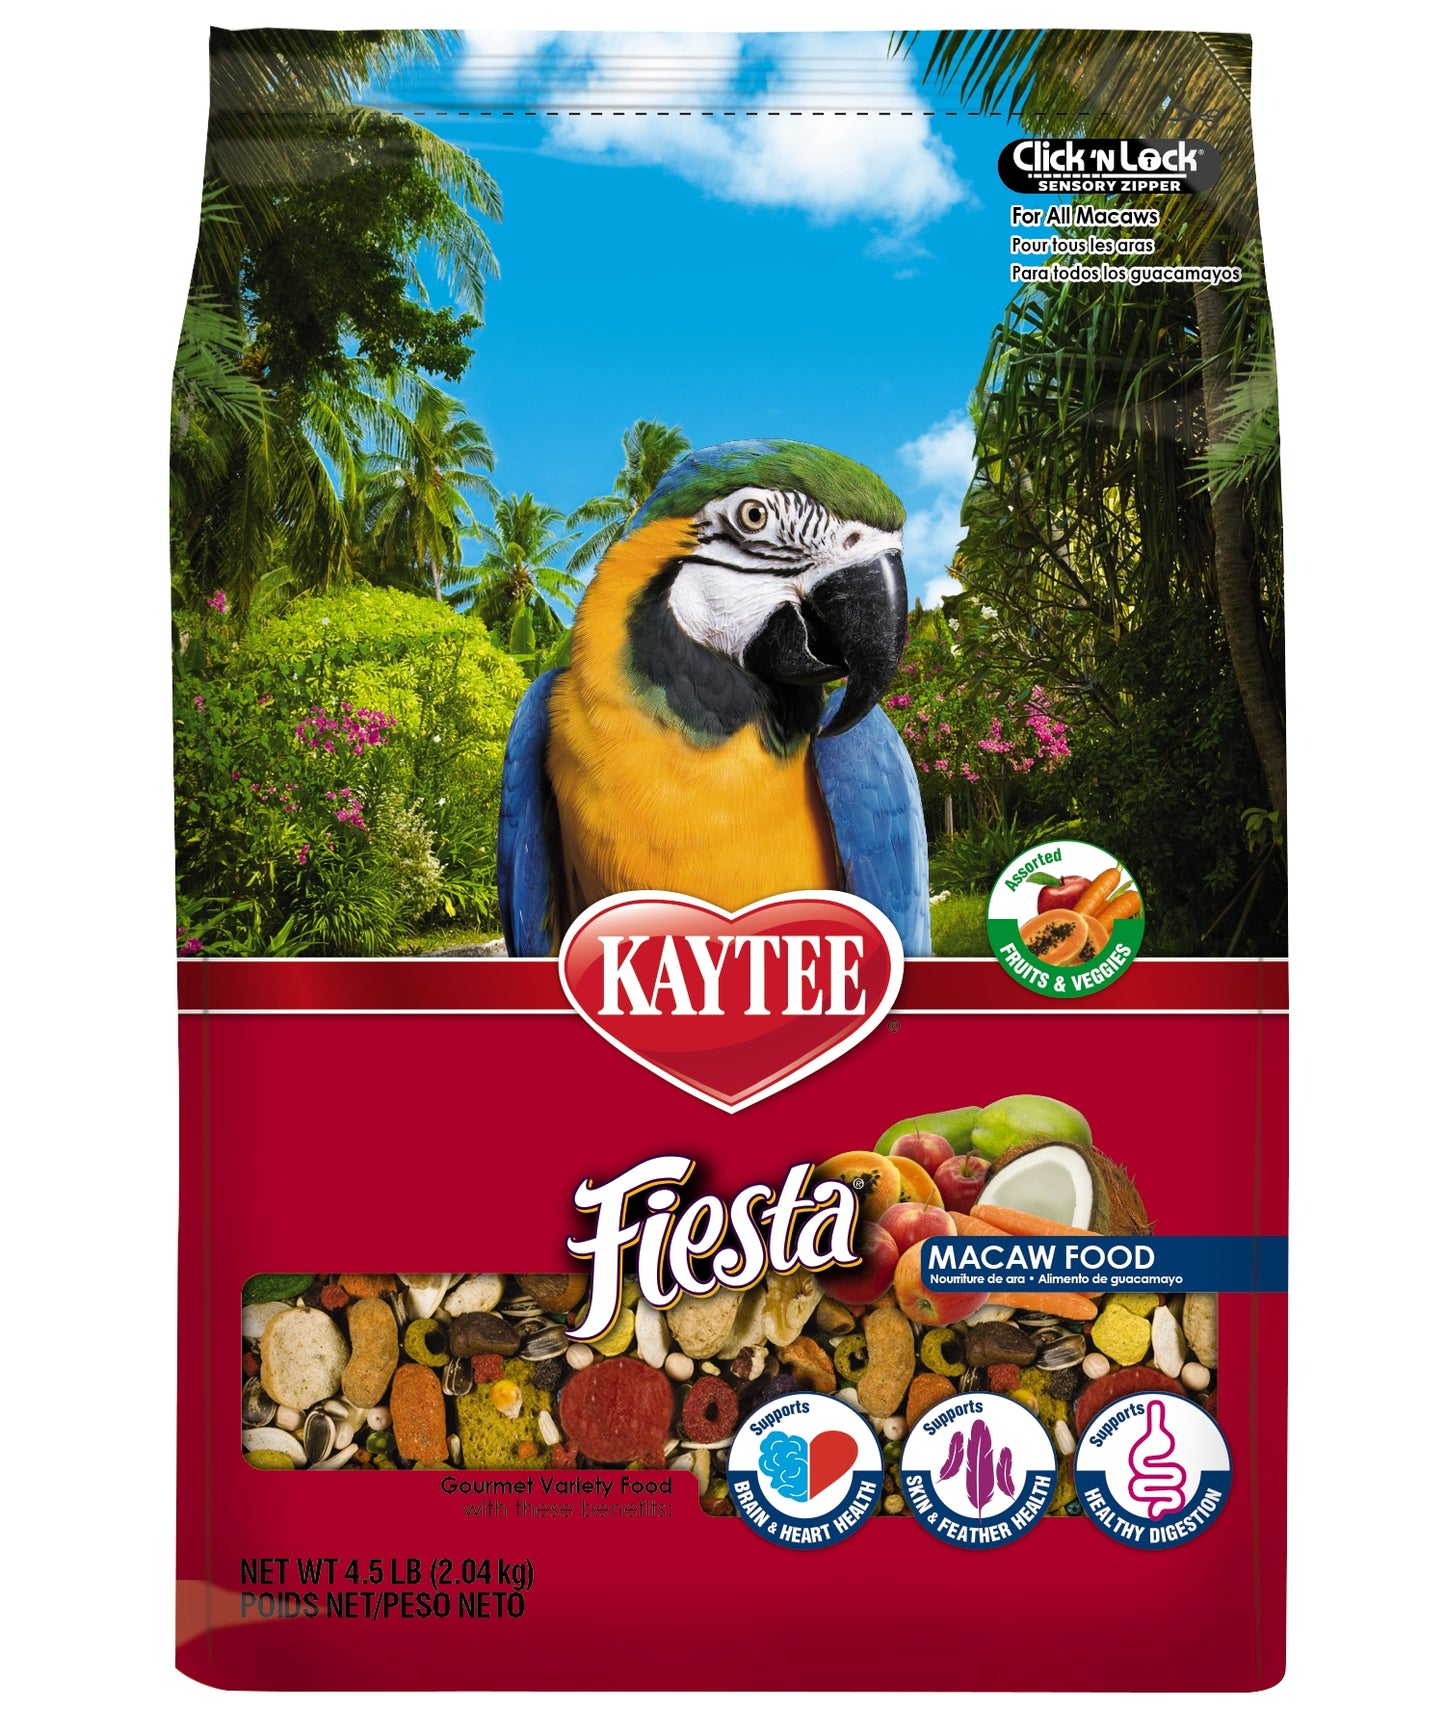 Kaytee Fiesta Macaw Food, 4.5-lb Bag